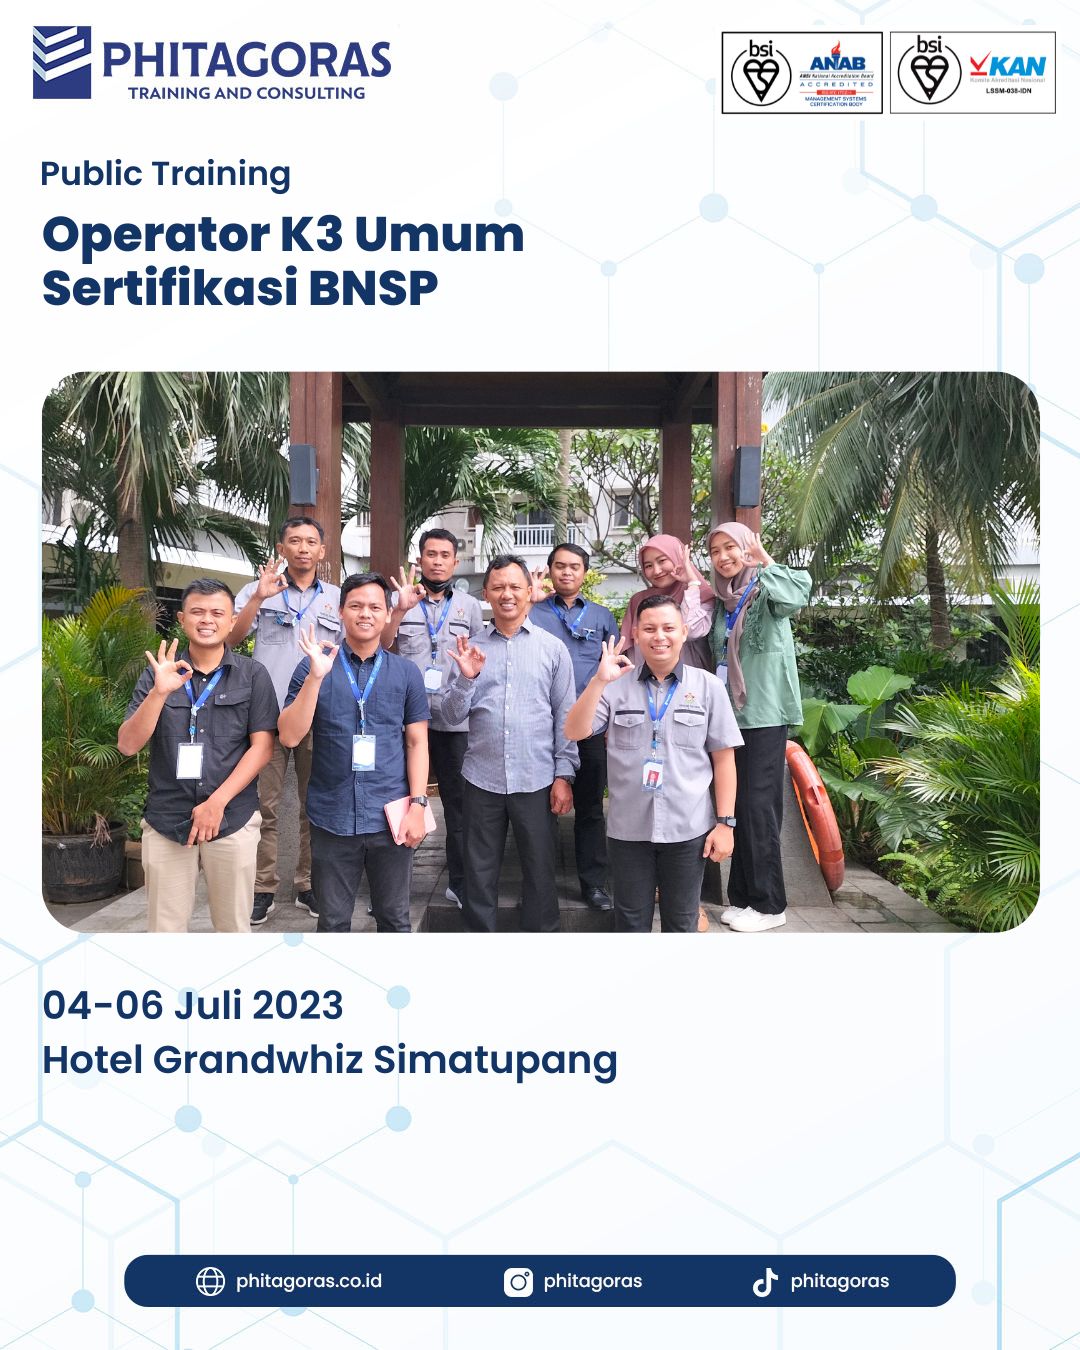 Public Training Operator K3 Umum Sertifikasi BNSP